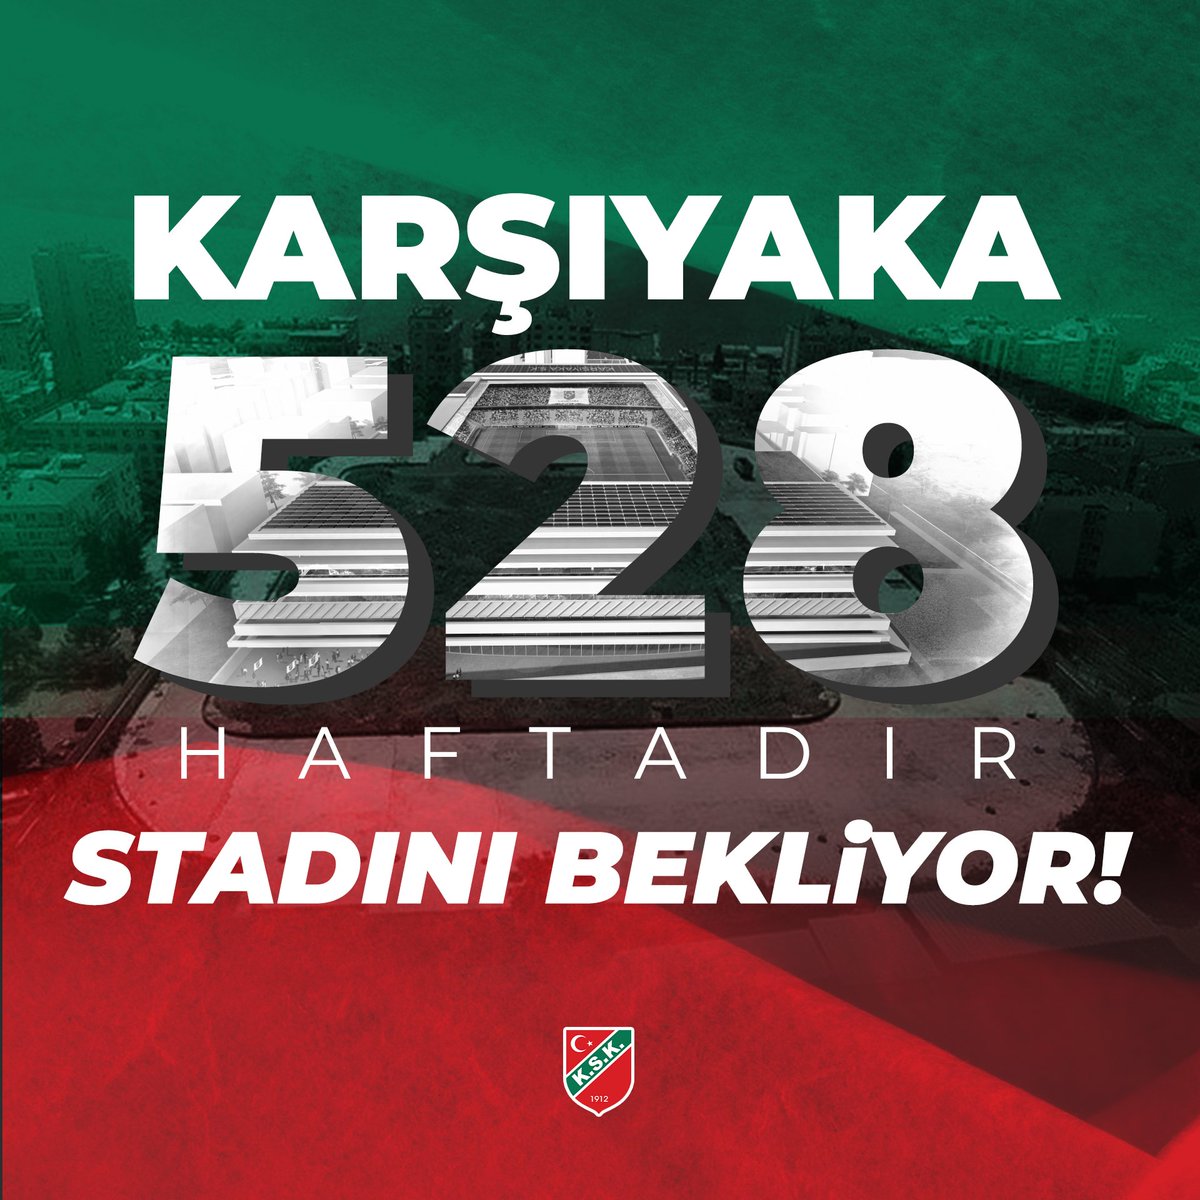 Karşıyaka 5⃣2⃣8⃣ haftadır stadını bekliyor! #KarşıyakaStadınıİstiyor